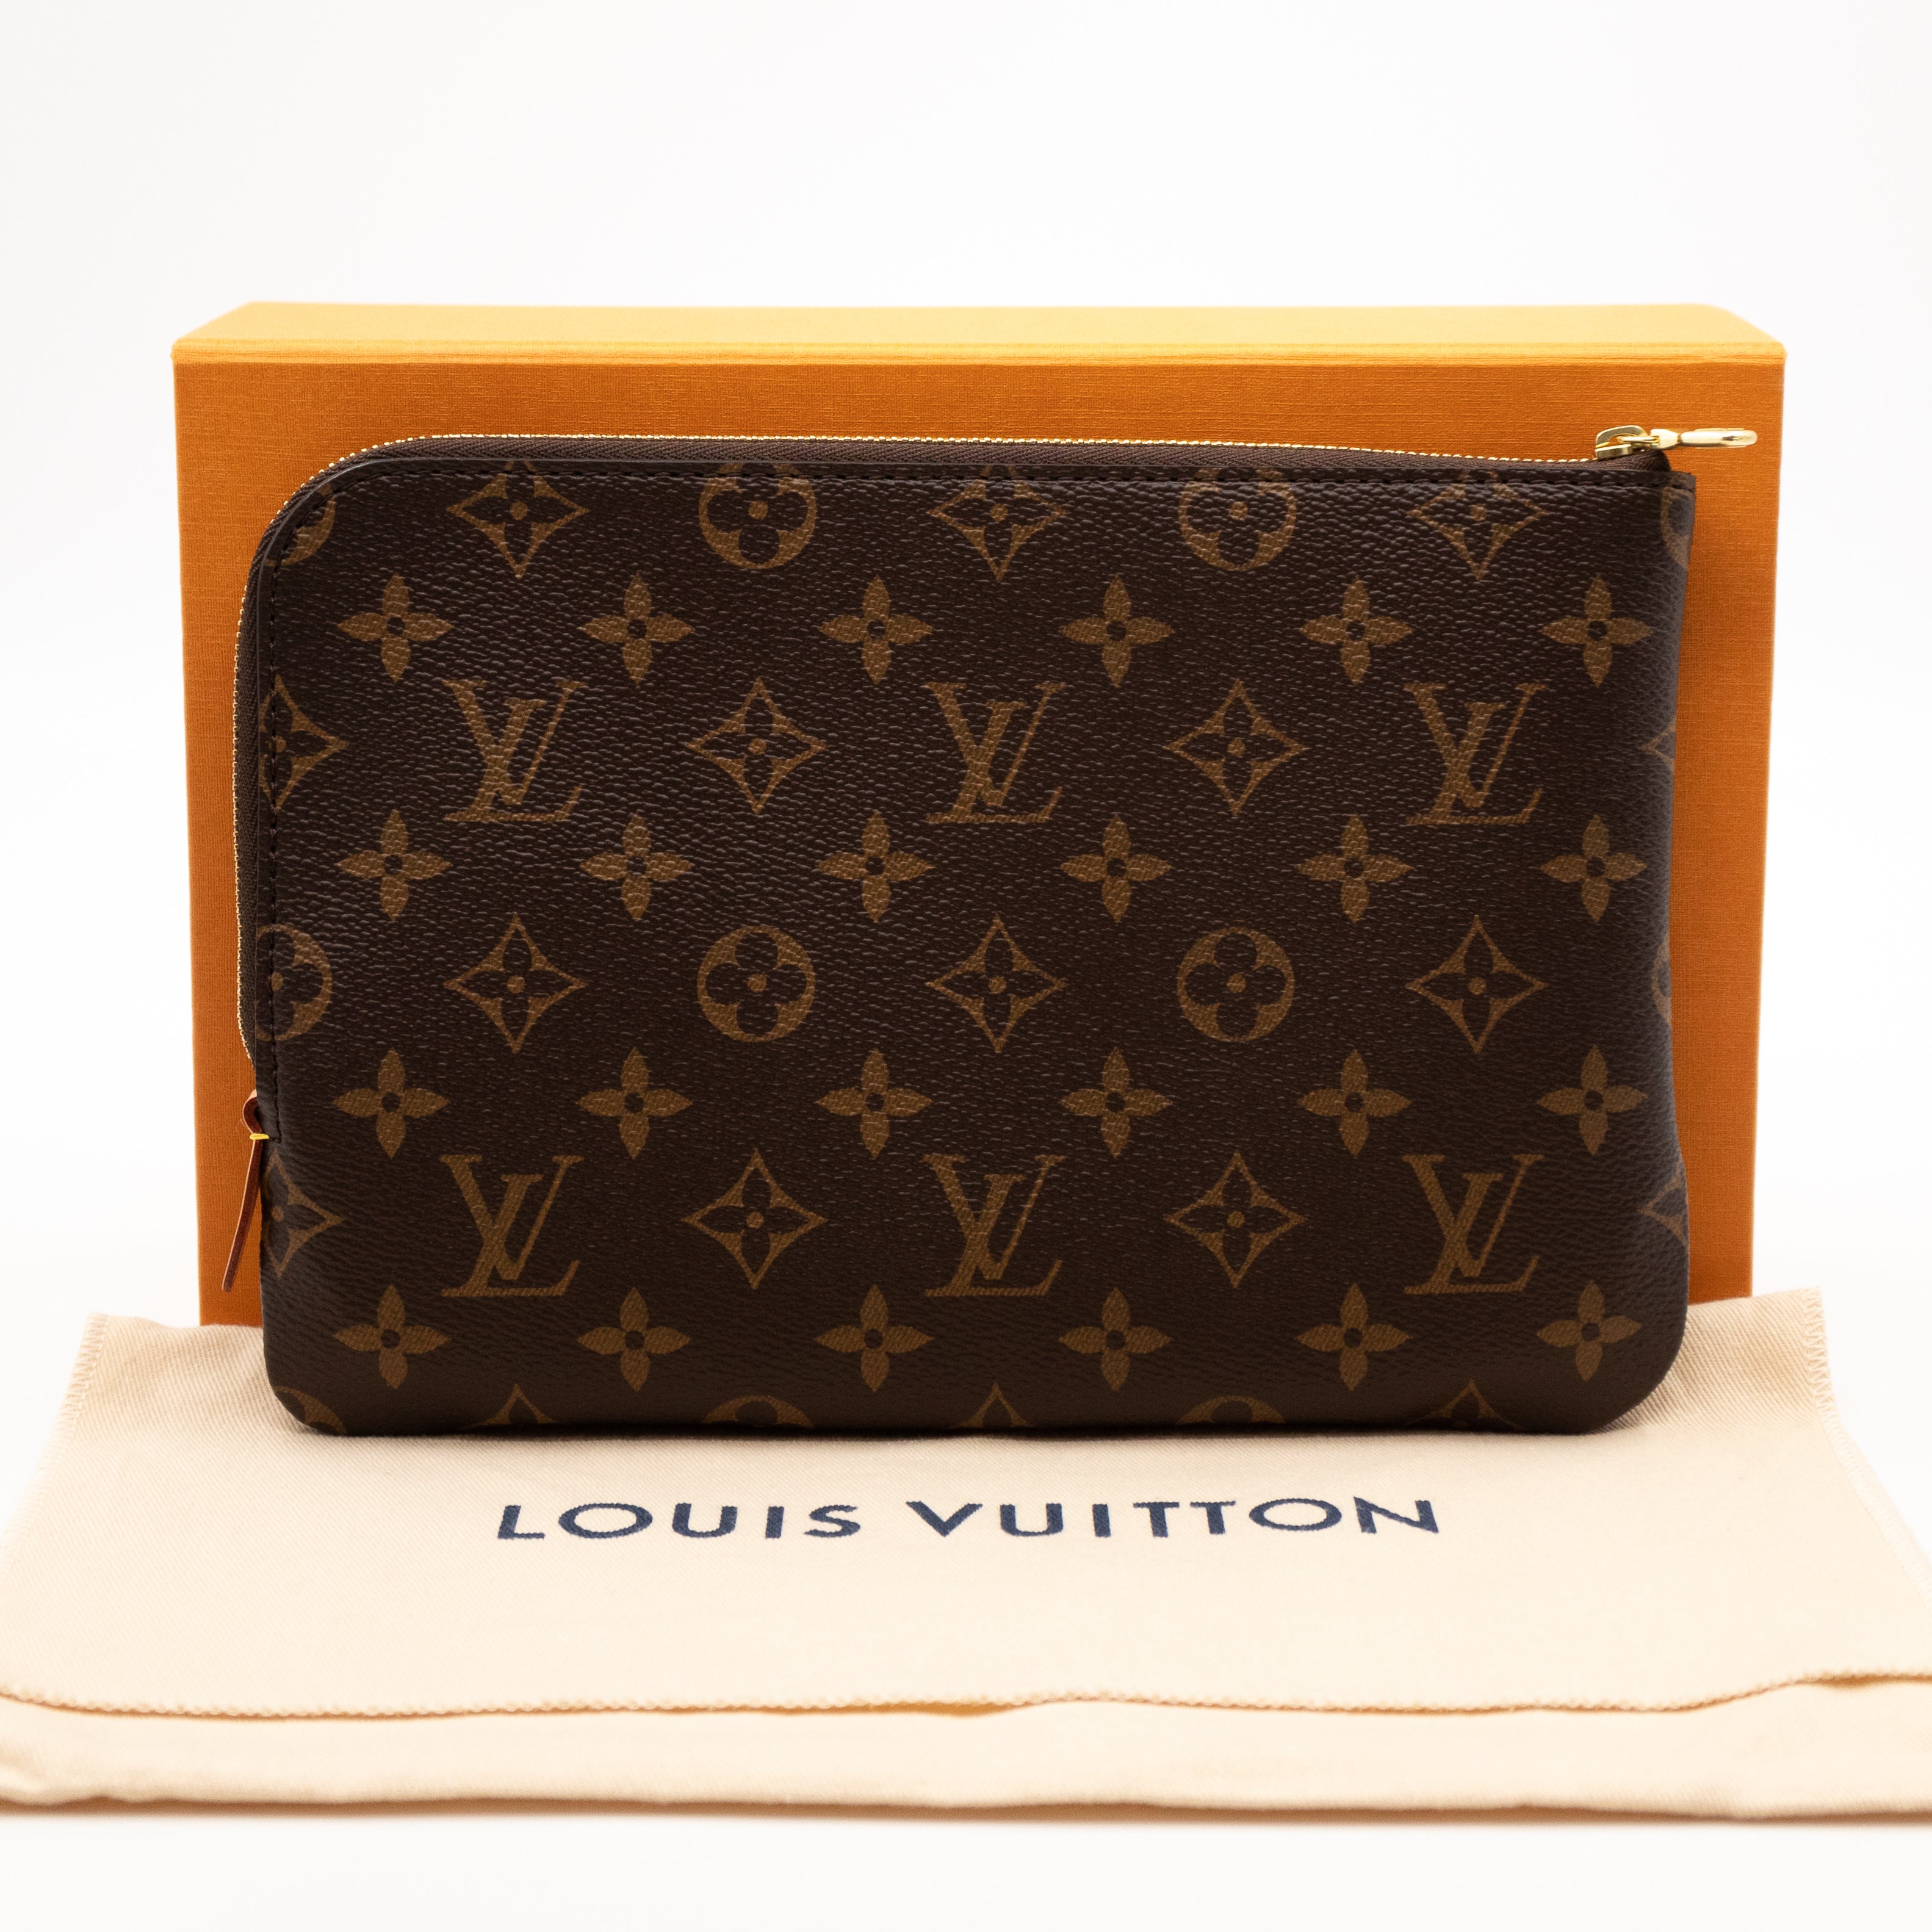 Louis Vuitton – Louis Vuitton Etui Voyage PM Monogram – Queen Station